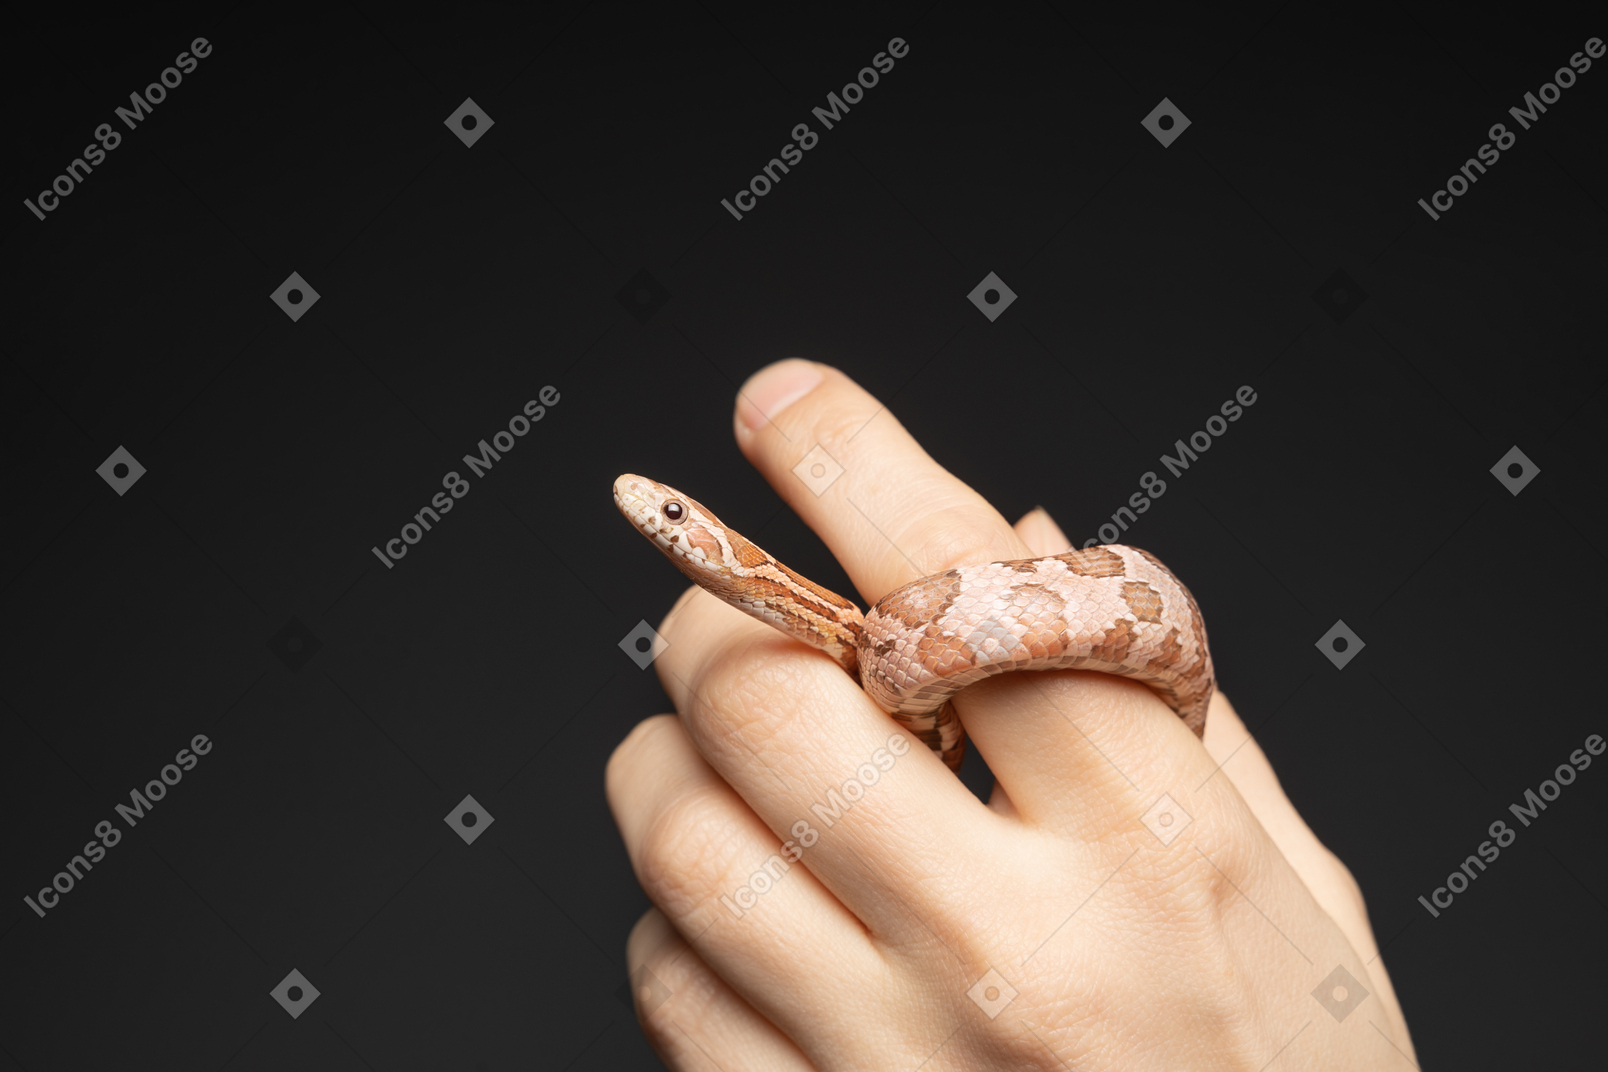 在人的手指周围弯曲的小玉米蛇